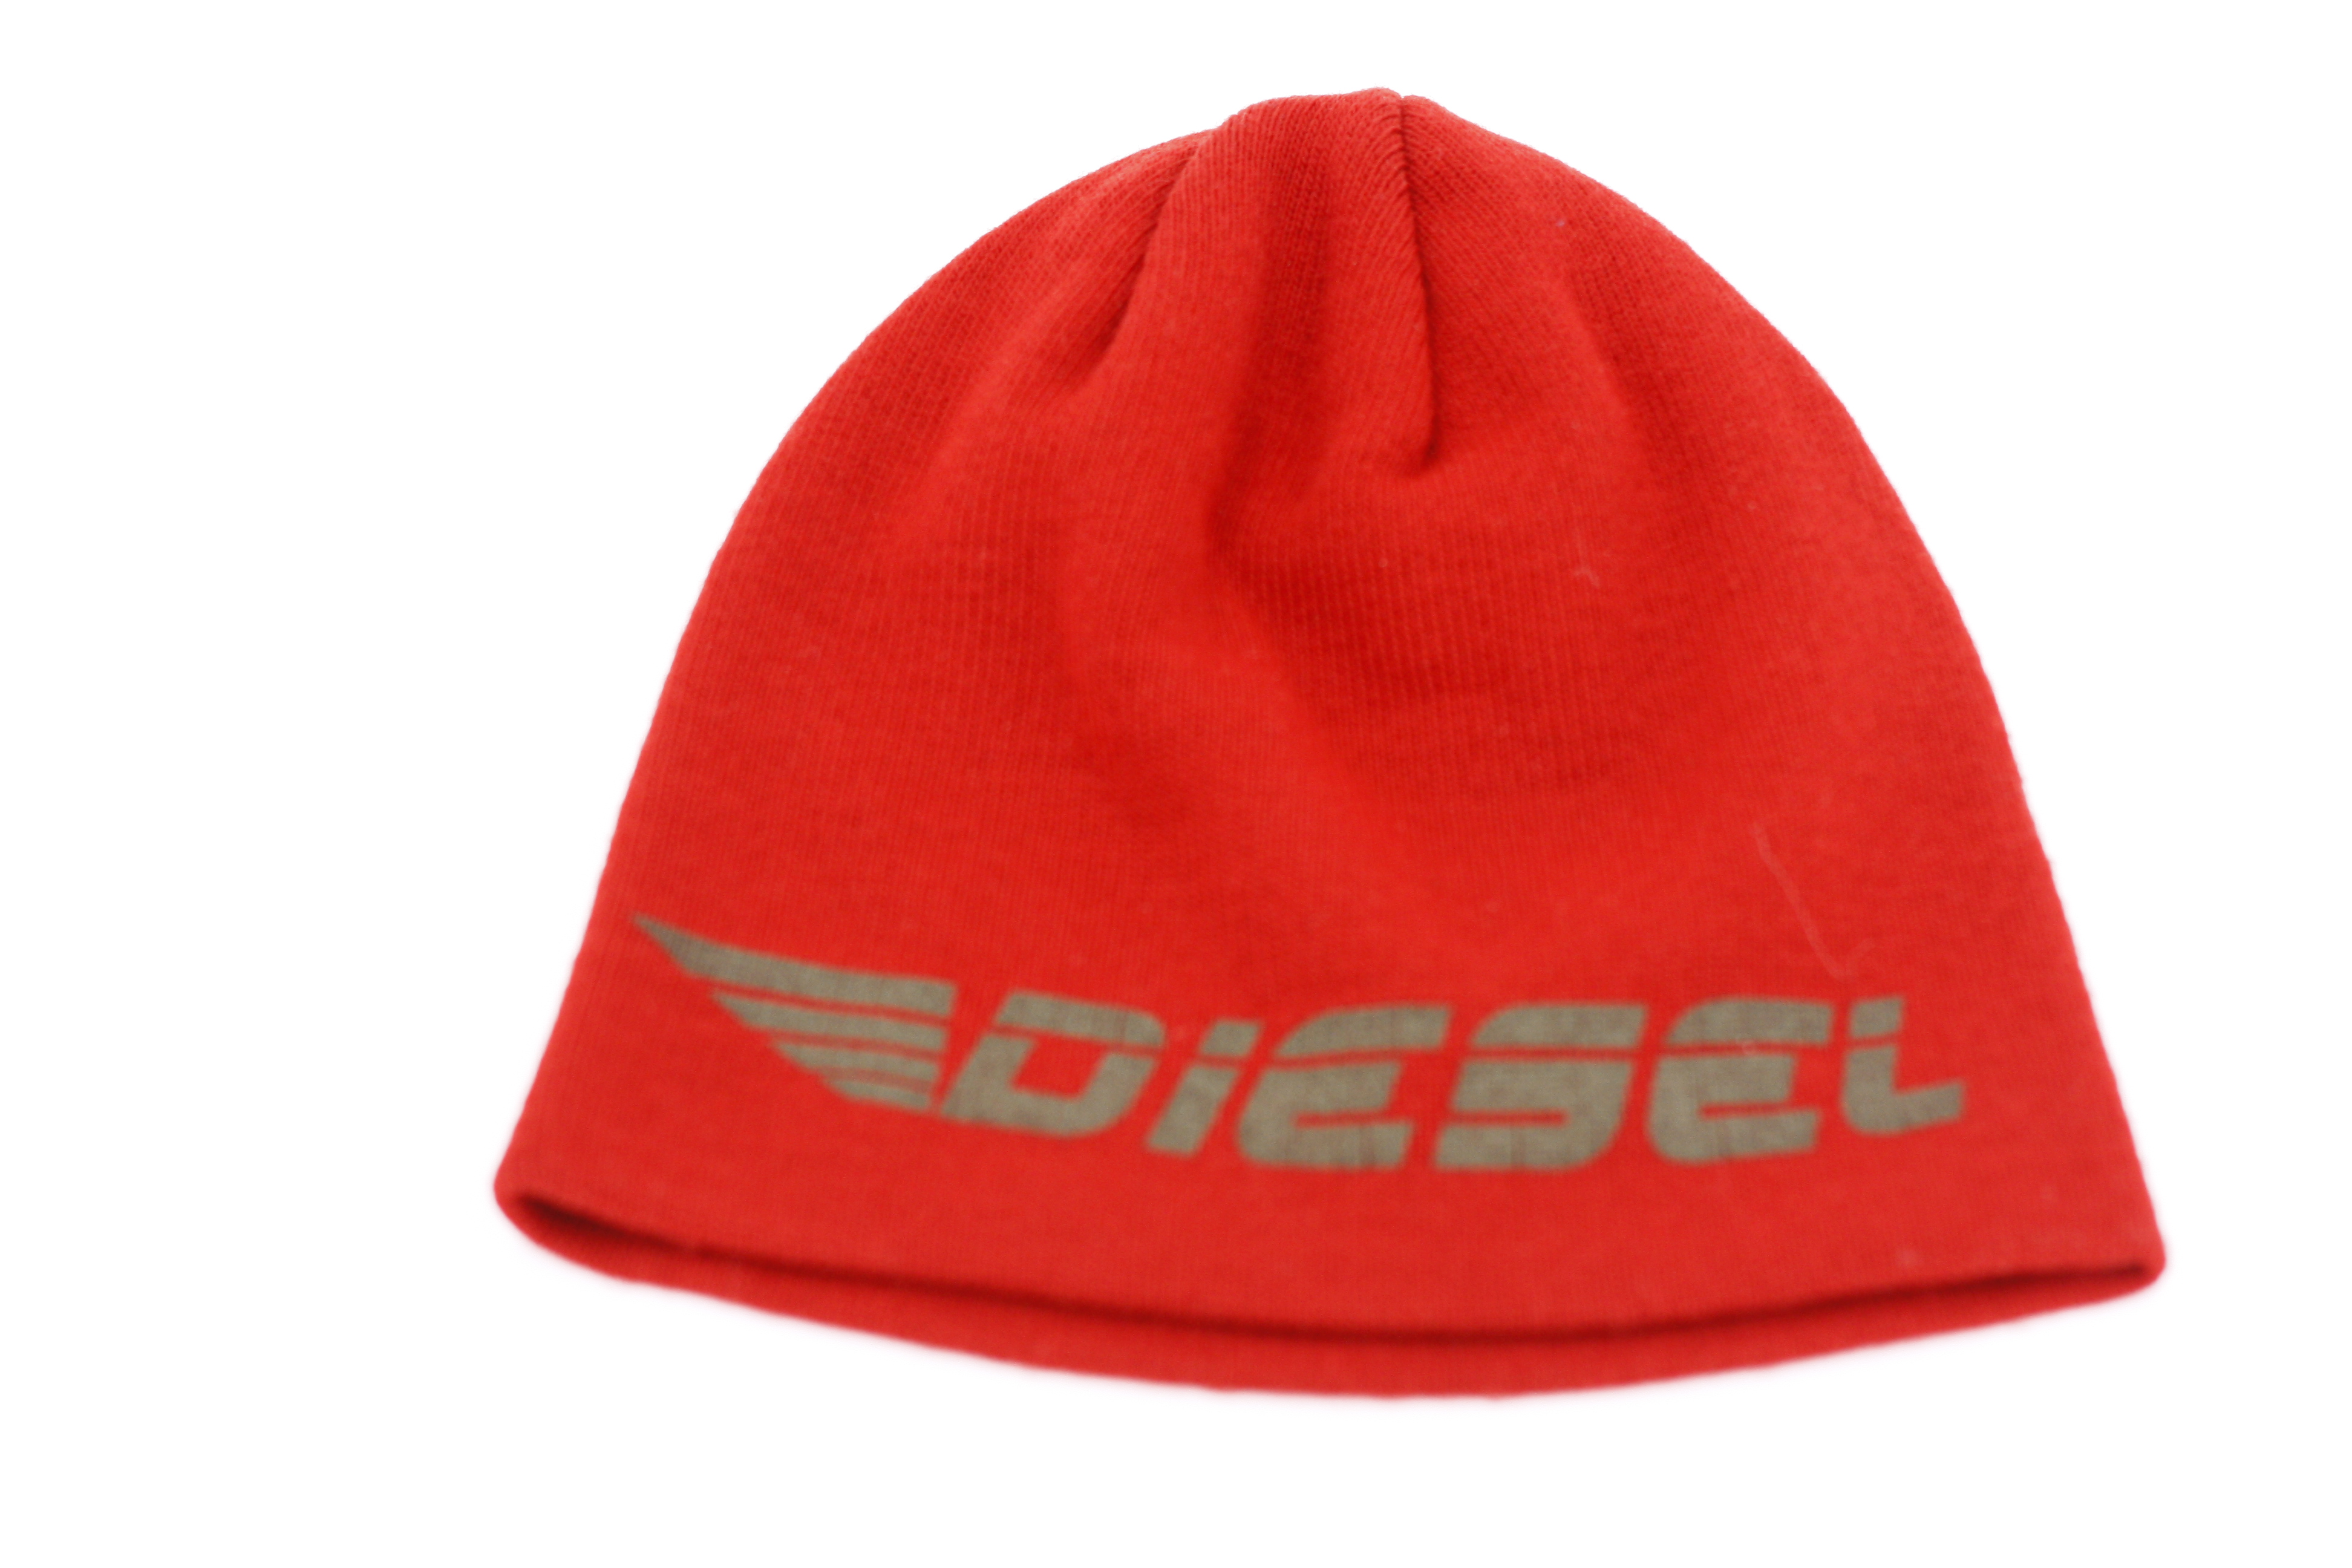 Čepice - Diesel - Červená/one size